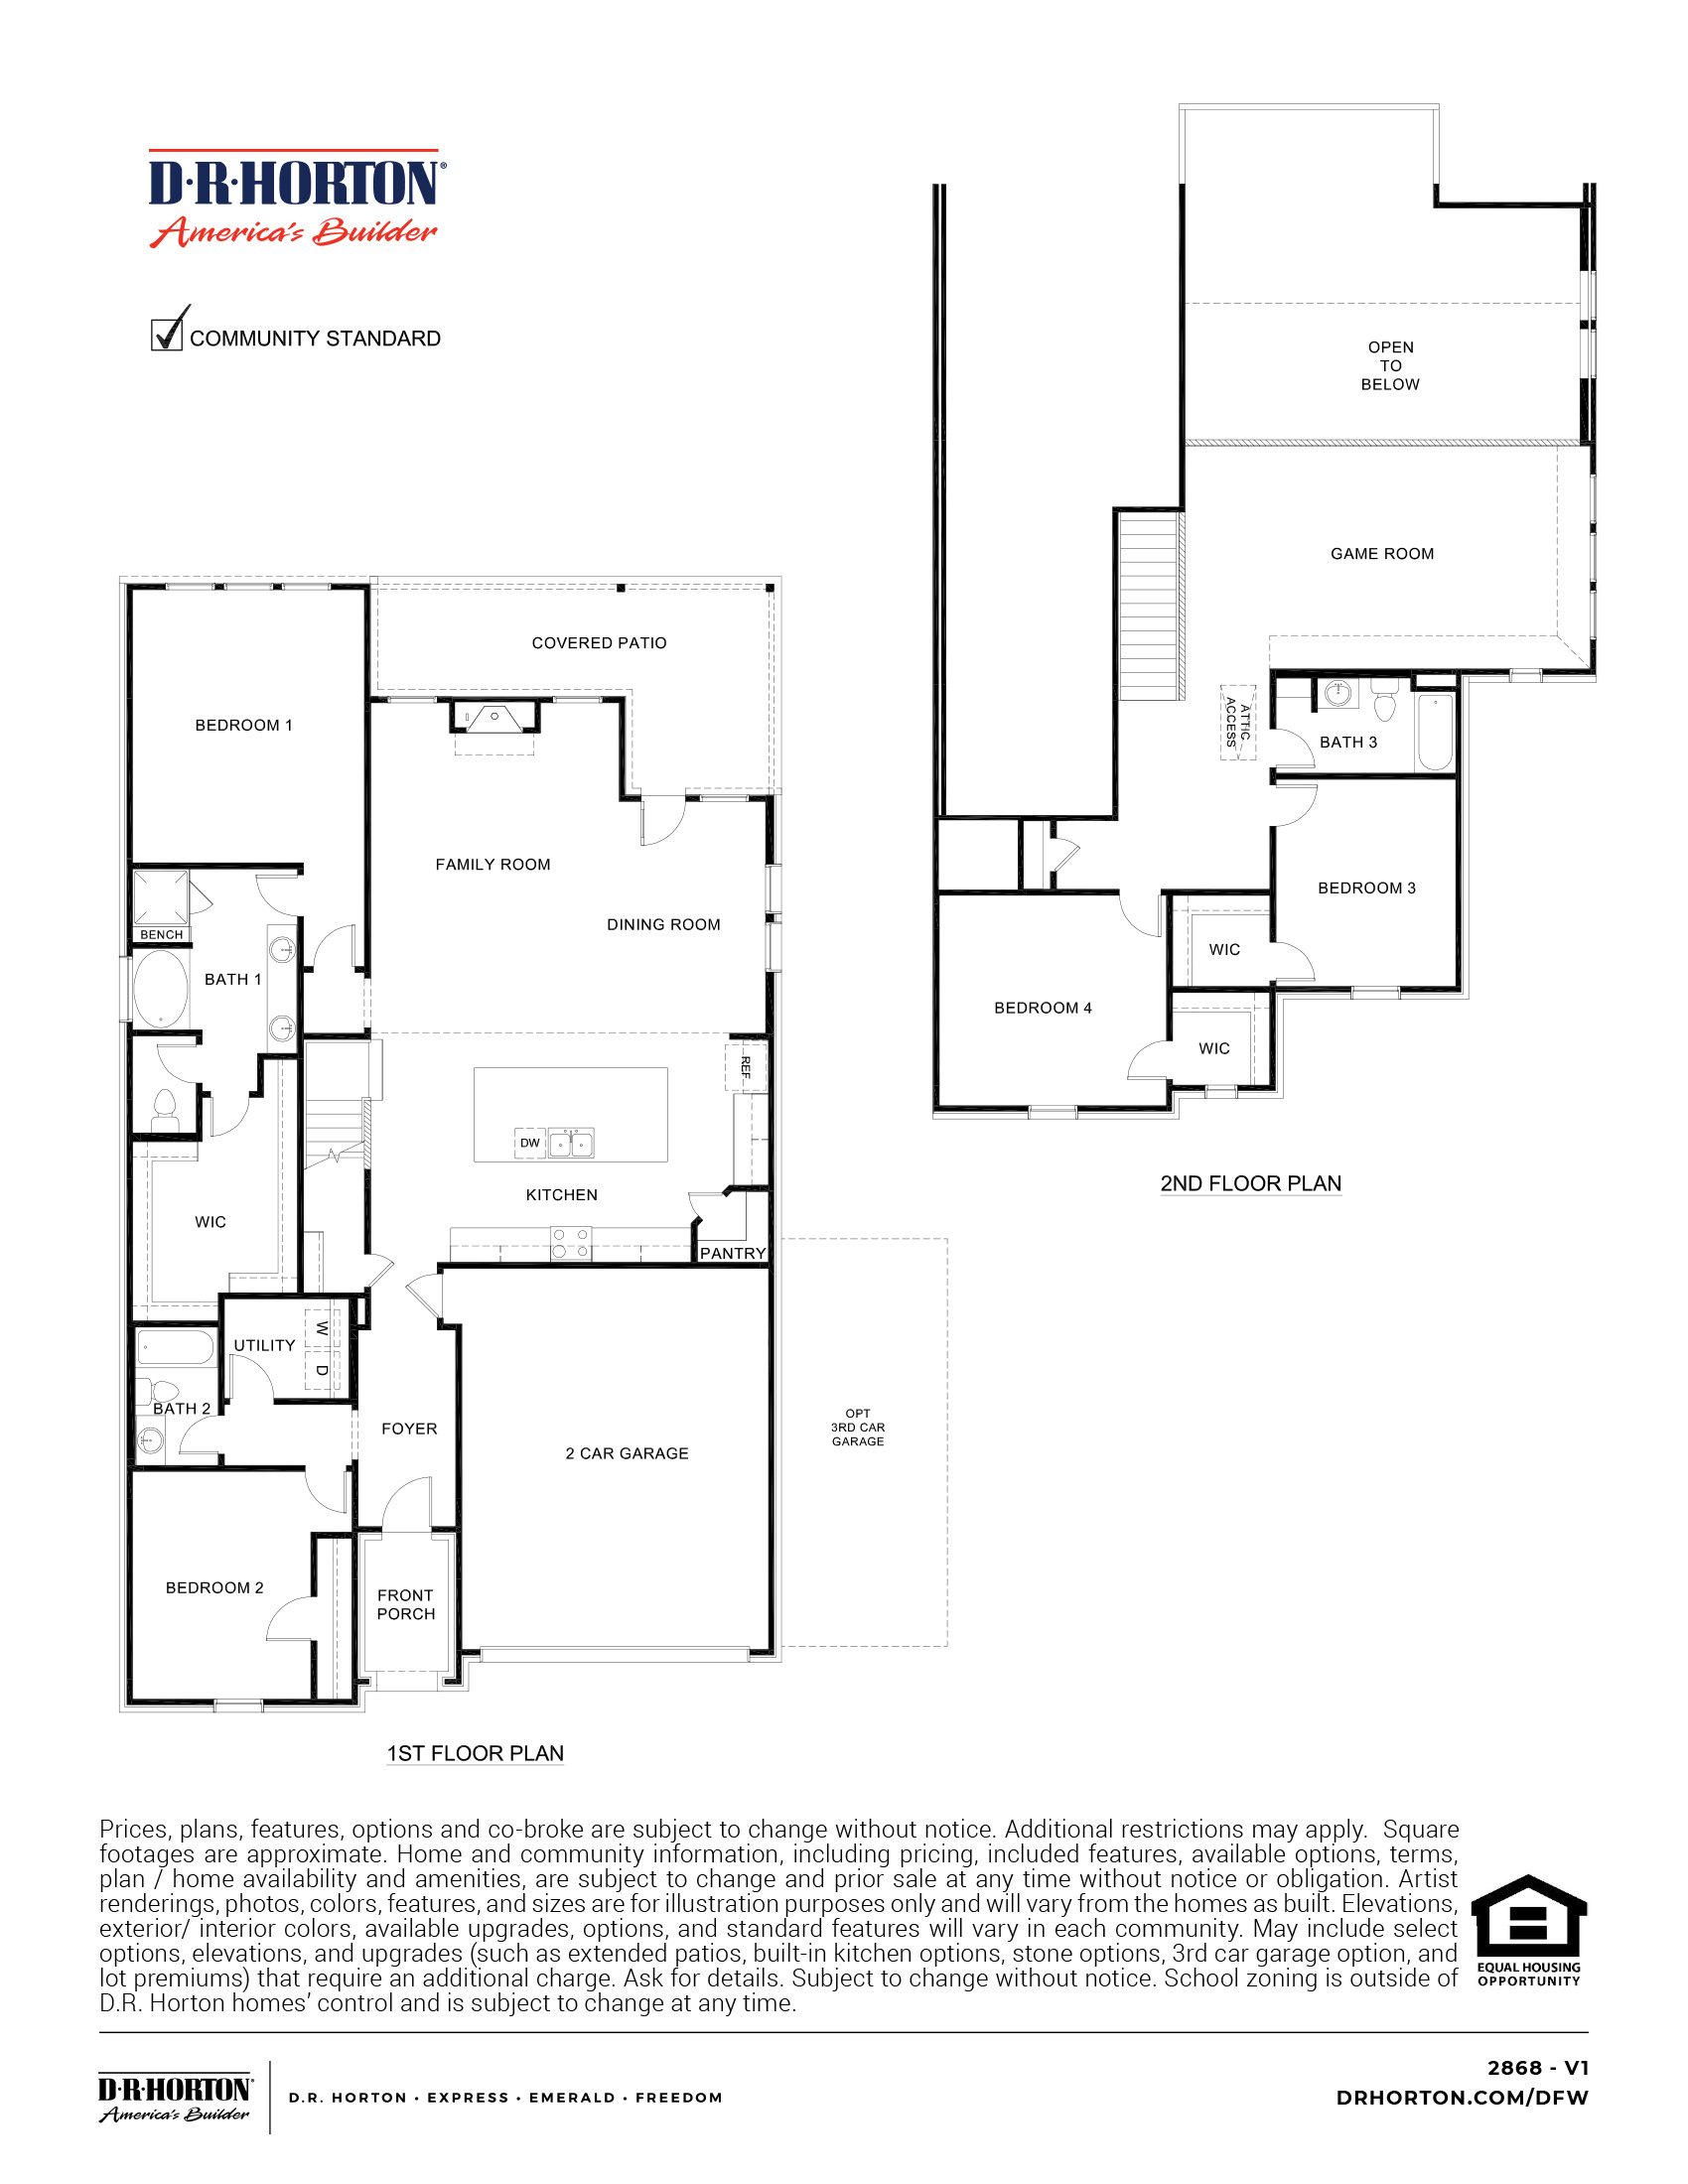 2868 Englewood floorplan rendering